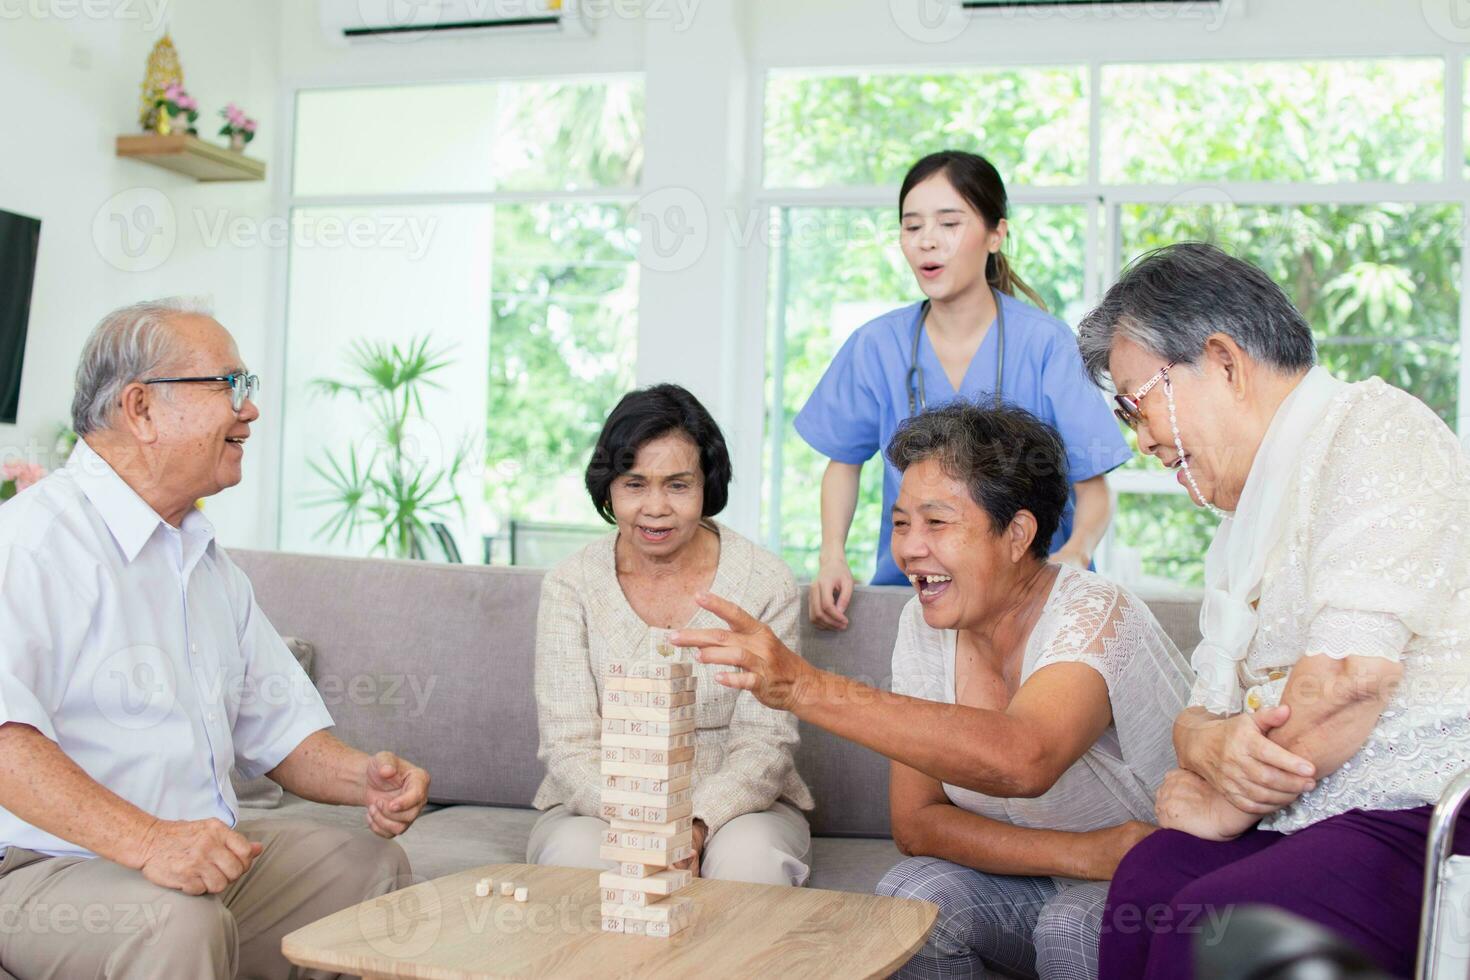 verpleging huis zorg concept. verpleging huis zorg concept. Aziatisch senior burgers aan het doen activiteiten in verpleging huizen. foto